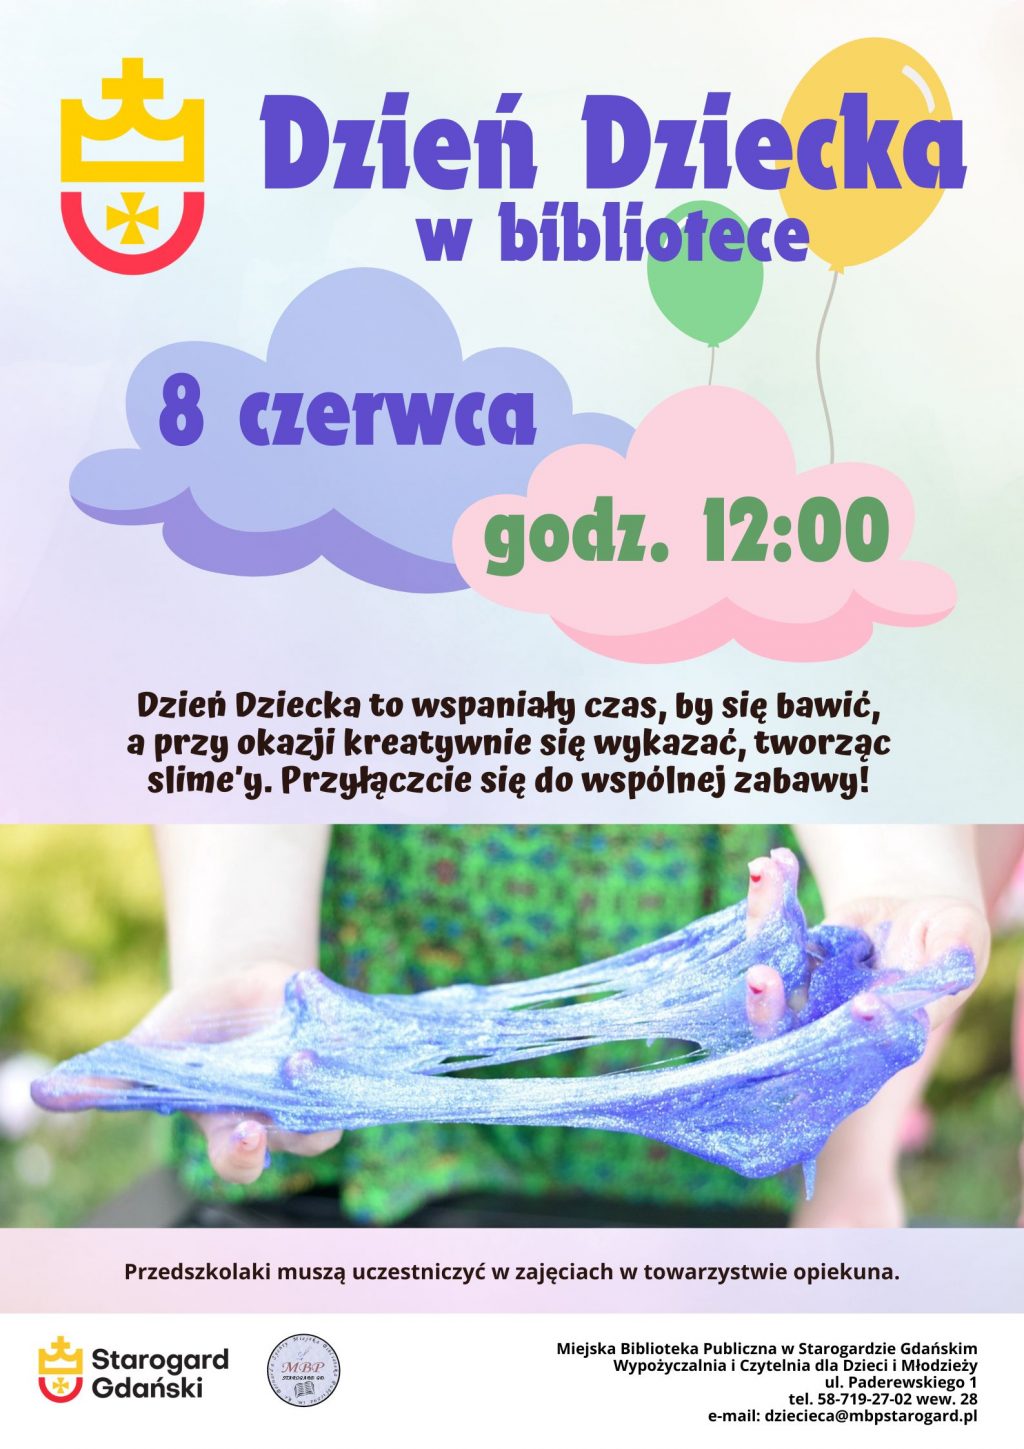 Plakat informujący o wydarzeniu: Dzień Dziecka w bibliotece, 8 czerwca, godz. 12:00. Dzień Dziecka to wspaniały czas, by się bawić, a przy okazji kreatywnie się wykazać, tworząc slime’y. Przyłączcie się do wspólnej zabawy. Przedszkolaki muszą uczestniczyć w zajęciach w towarzystwie opiekuna. Miejska Biblioteka Publiczna w Starogardzie Gdańskim, Wypożyczalnia i Czytelnia dla Dzieci i Młodzieży, ul. Paderewskiego 1 (I piętro), tel. 58-719-27-02 wew. 28, e-mail: dziecieca@mbpstarogard.pl. Zdjęcie rąk dziewczynki rozciągającej brokatowego slime'a. Logo biblioteki i miasta.